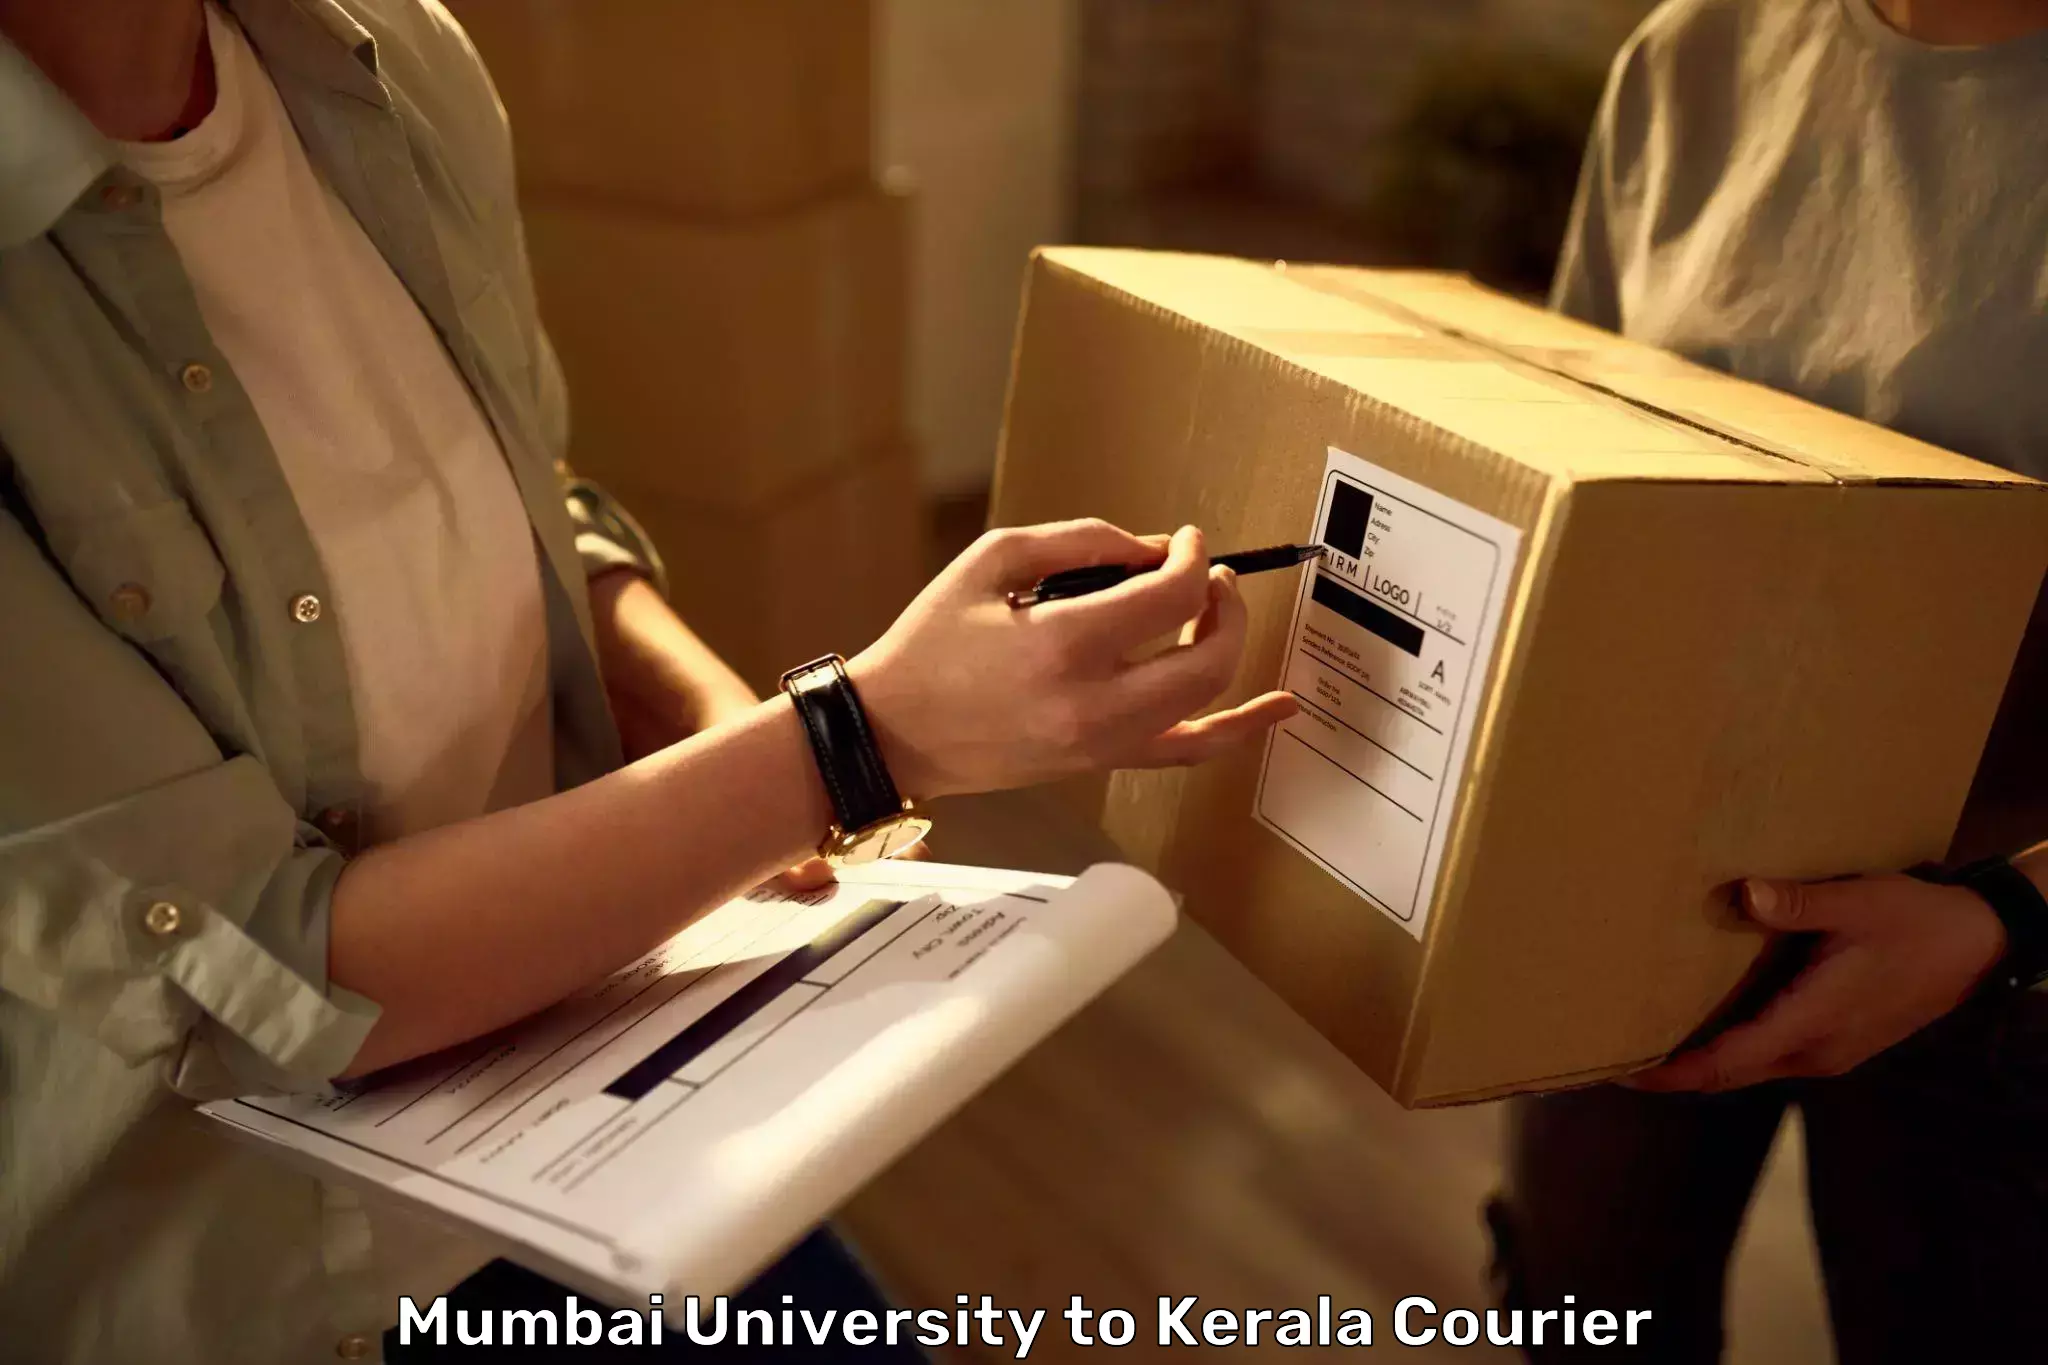 Baggage transport updates Mumbai University to Idukki